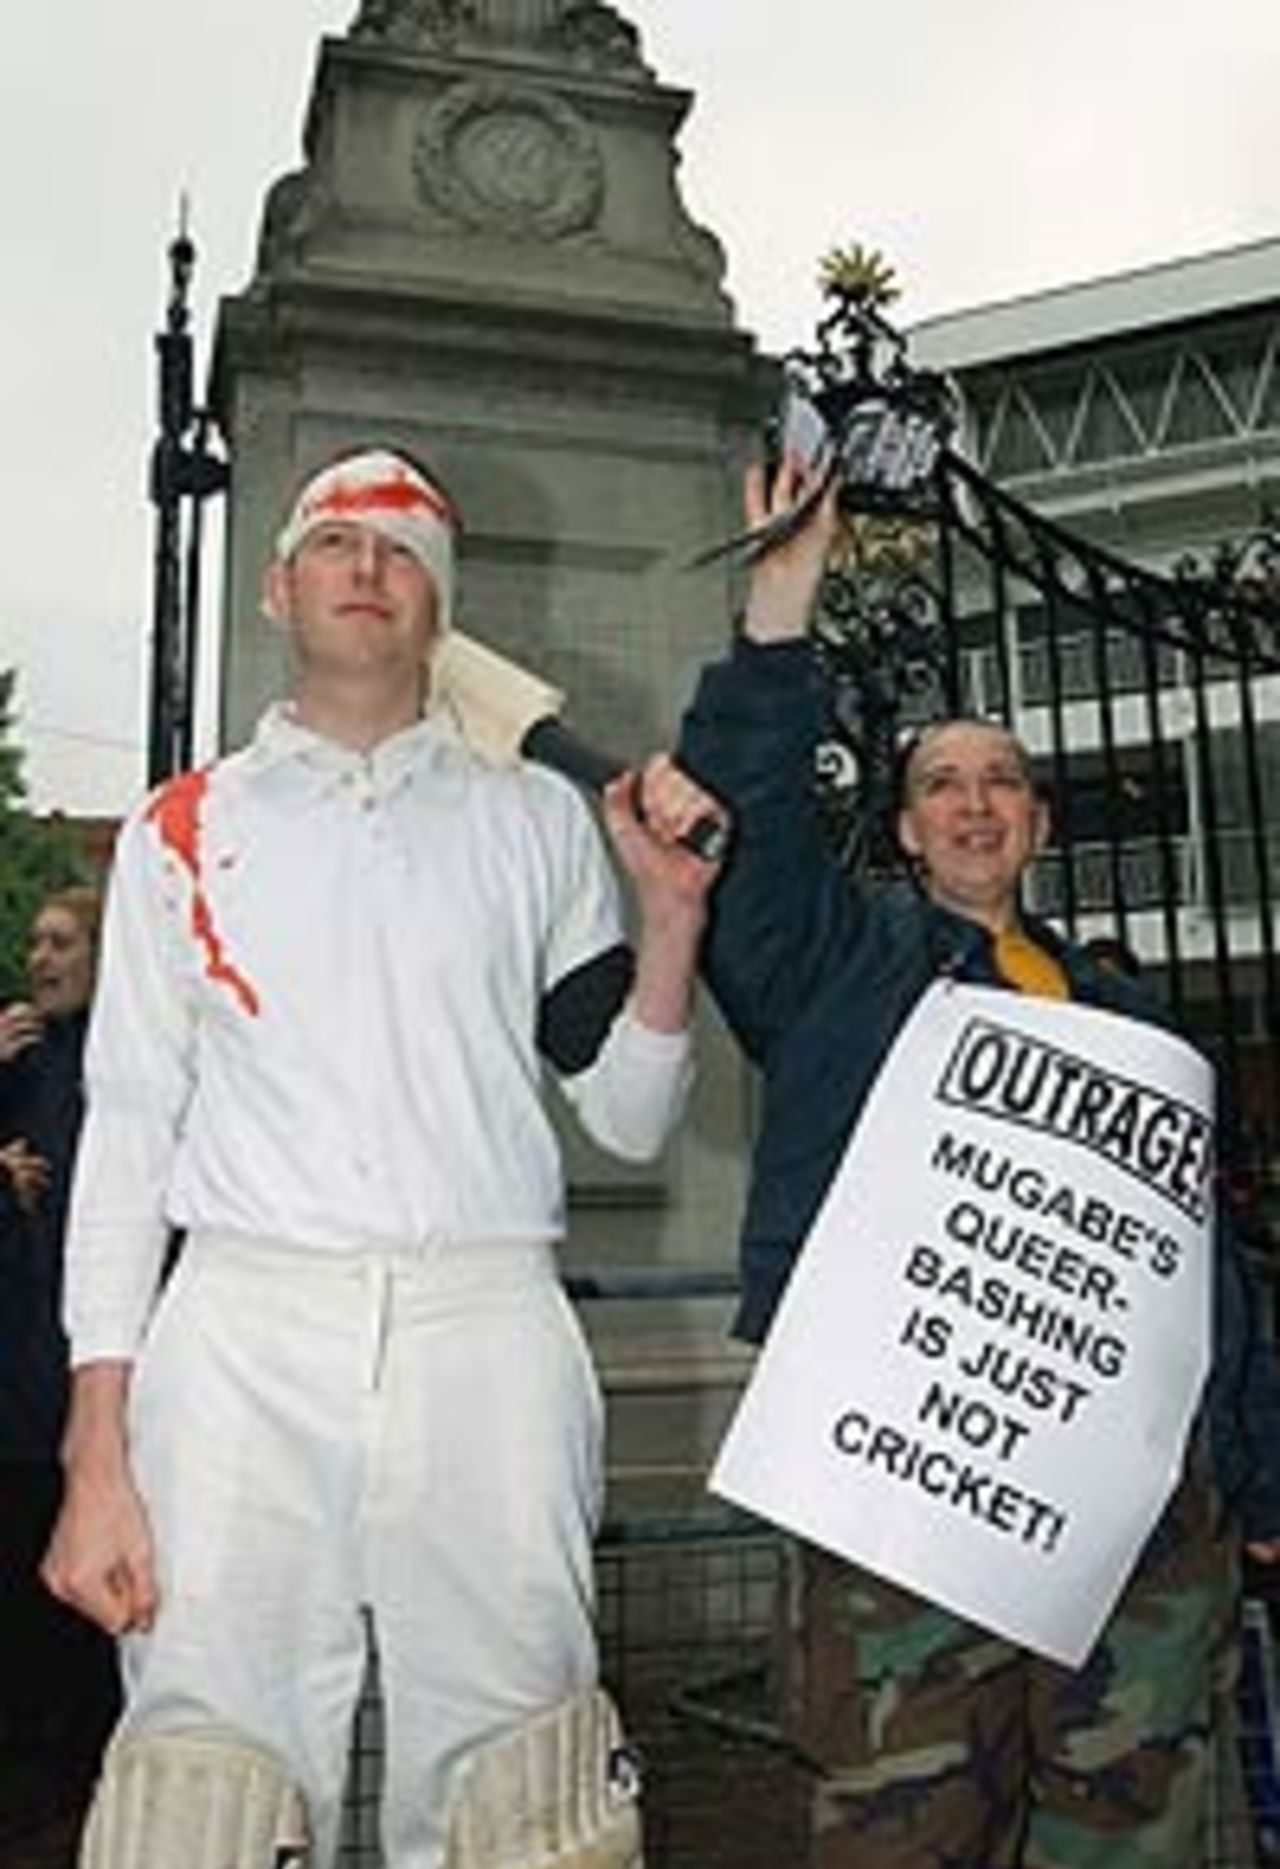 Anti Mugabe protestors at Lord's (May 22, 2003)